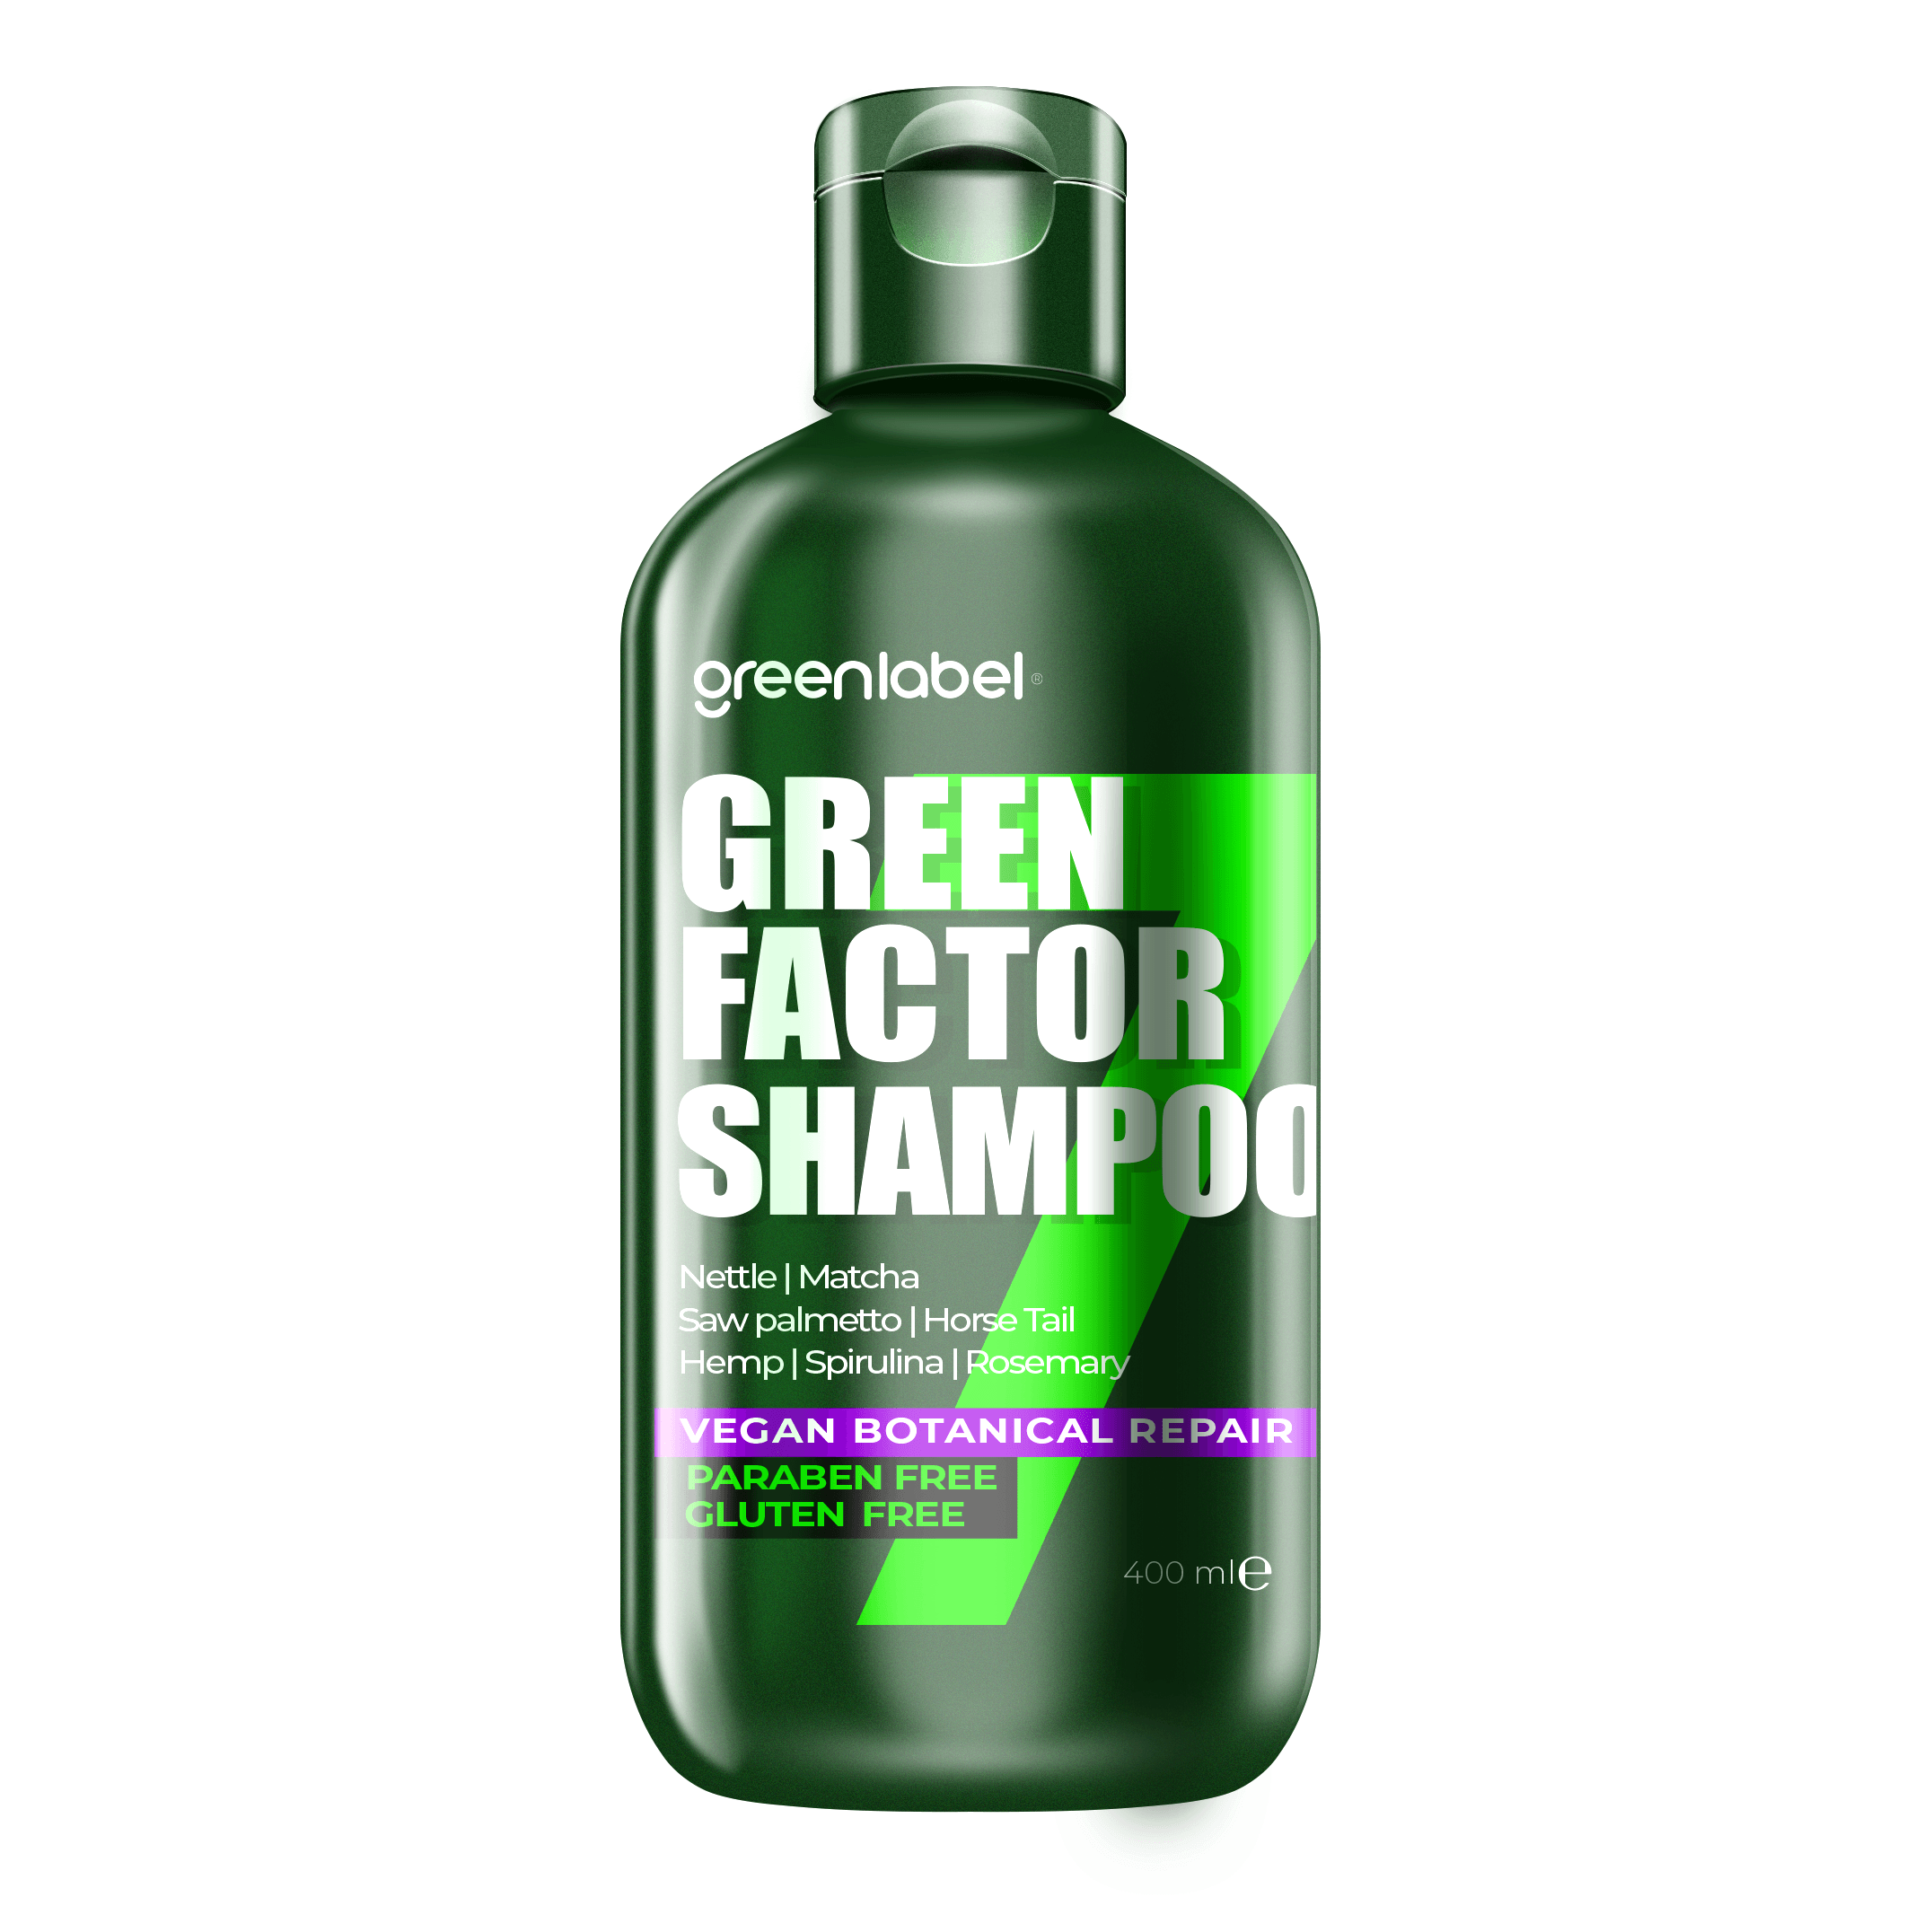 Green Factor 7 Bitkili Vegan Parabensiz Glutensiz Onarıcı ve Yoğun Bakım Şampuanı 400ml.